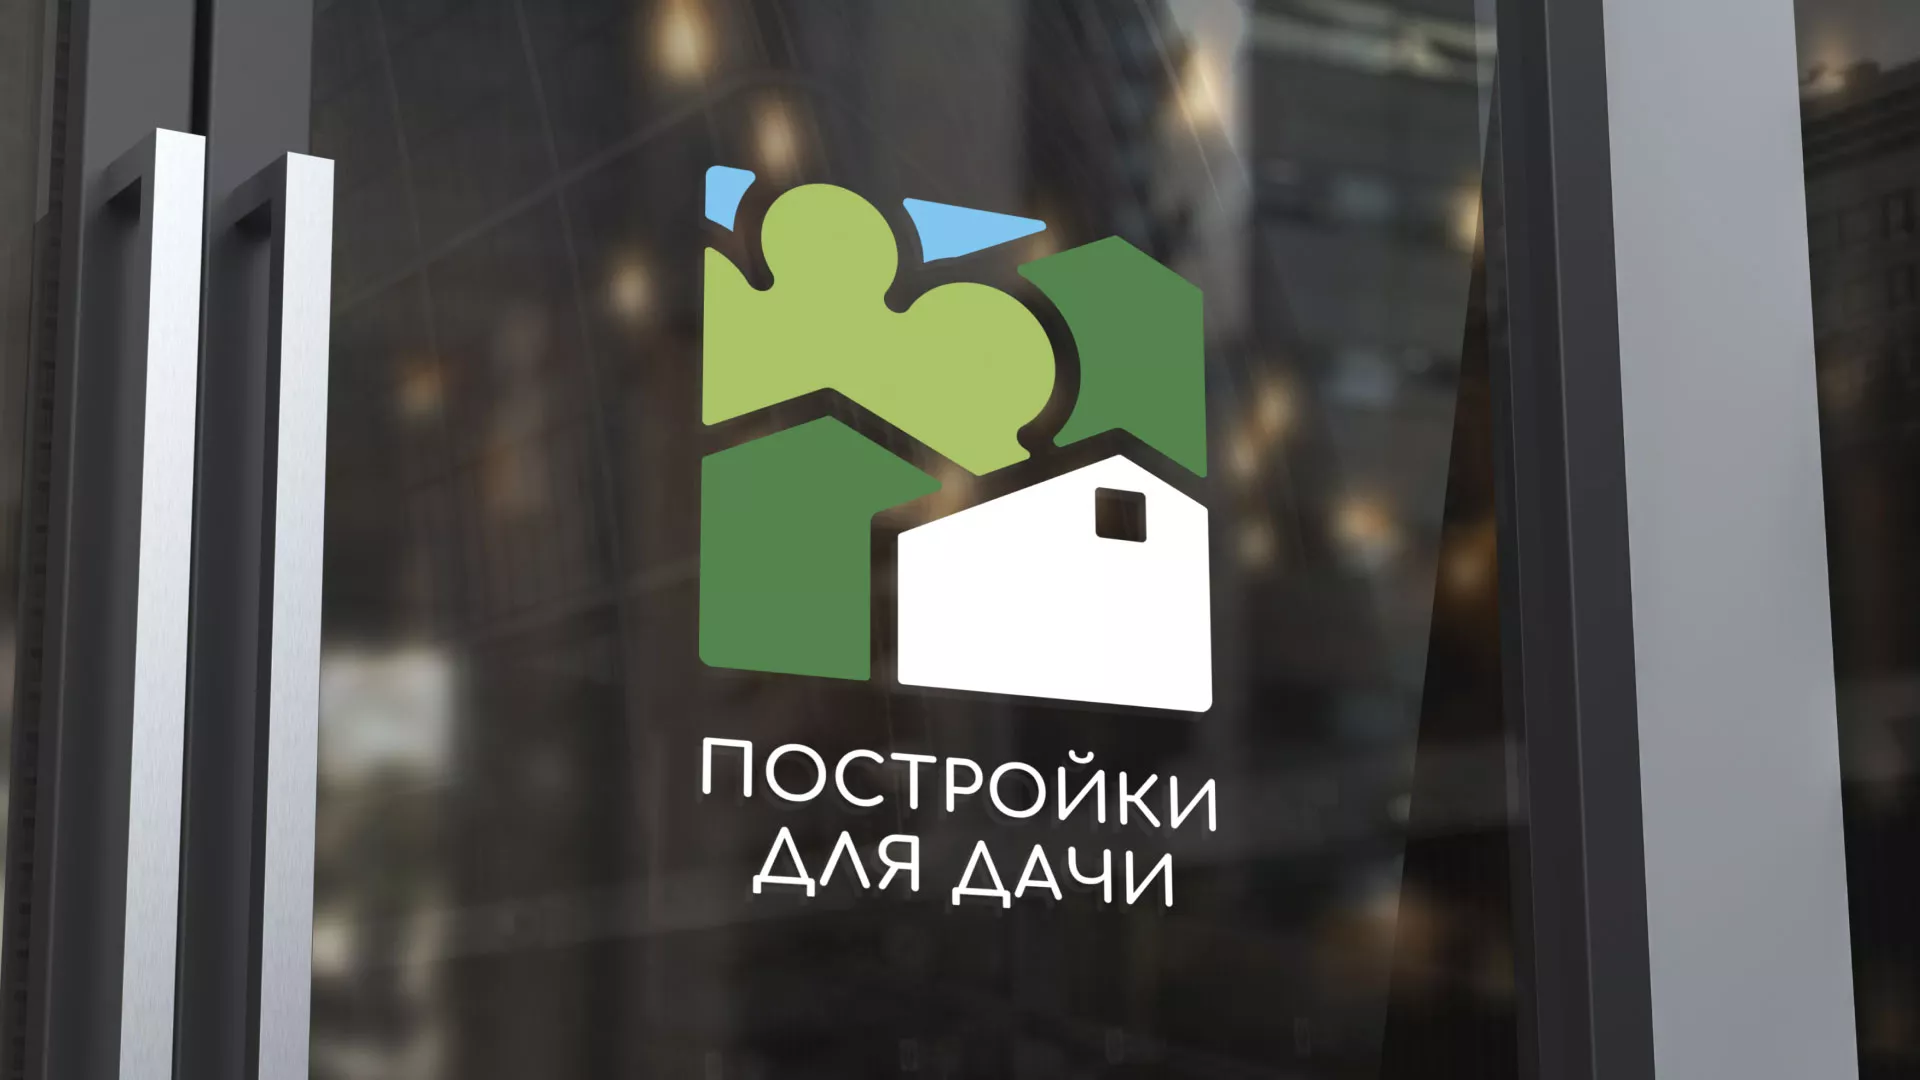 Разработка логотипа в Медвежьегорске для компании «Постройки для дачи»